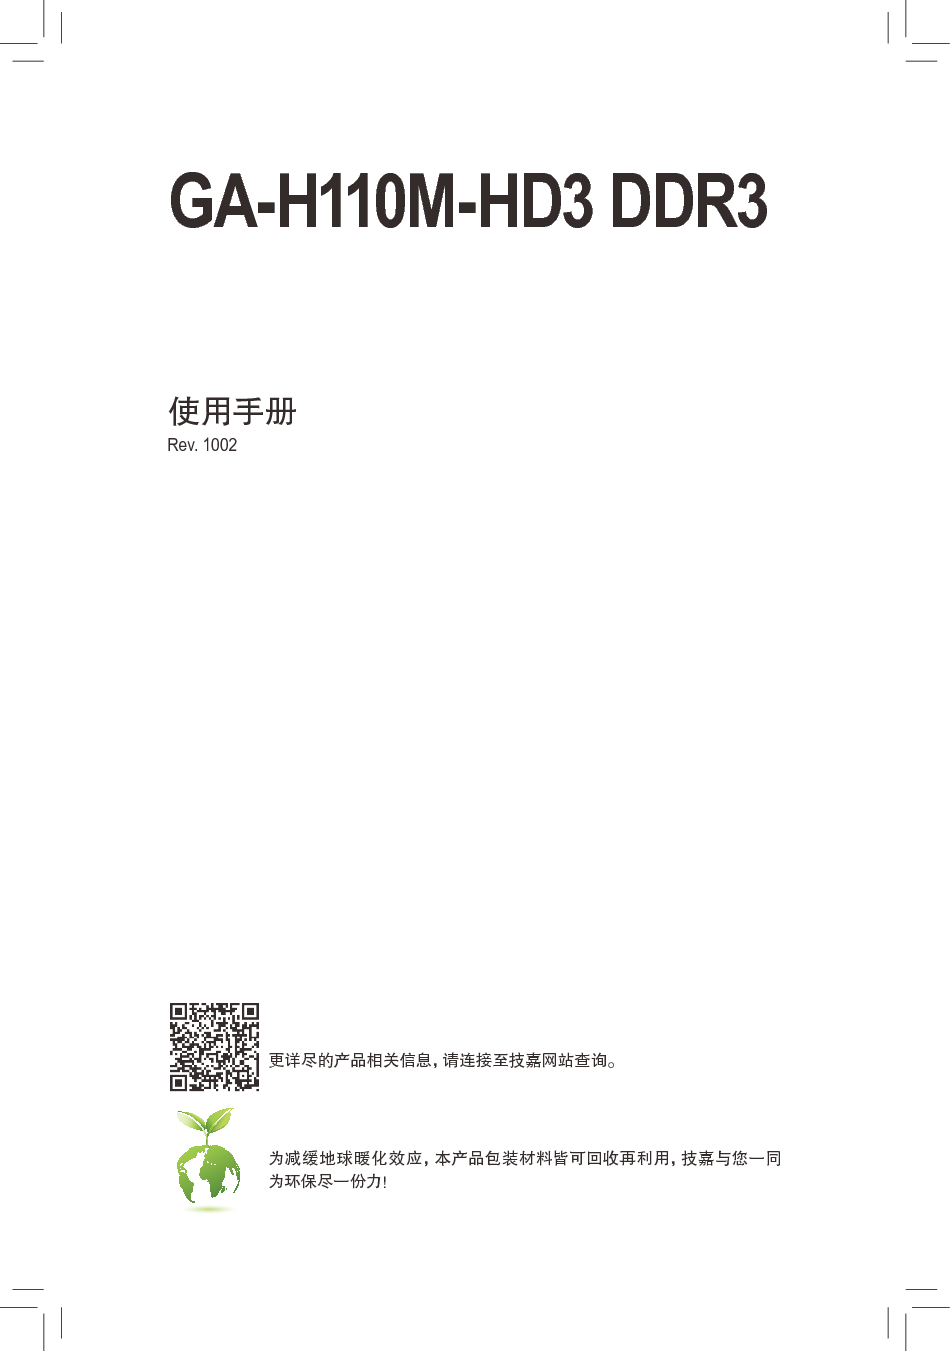 技嘉 Gigabyte GA-H110M-HD3 DDR3 使用手册 封面